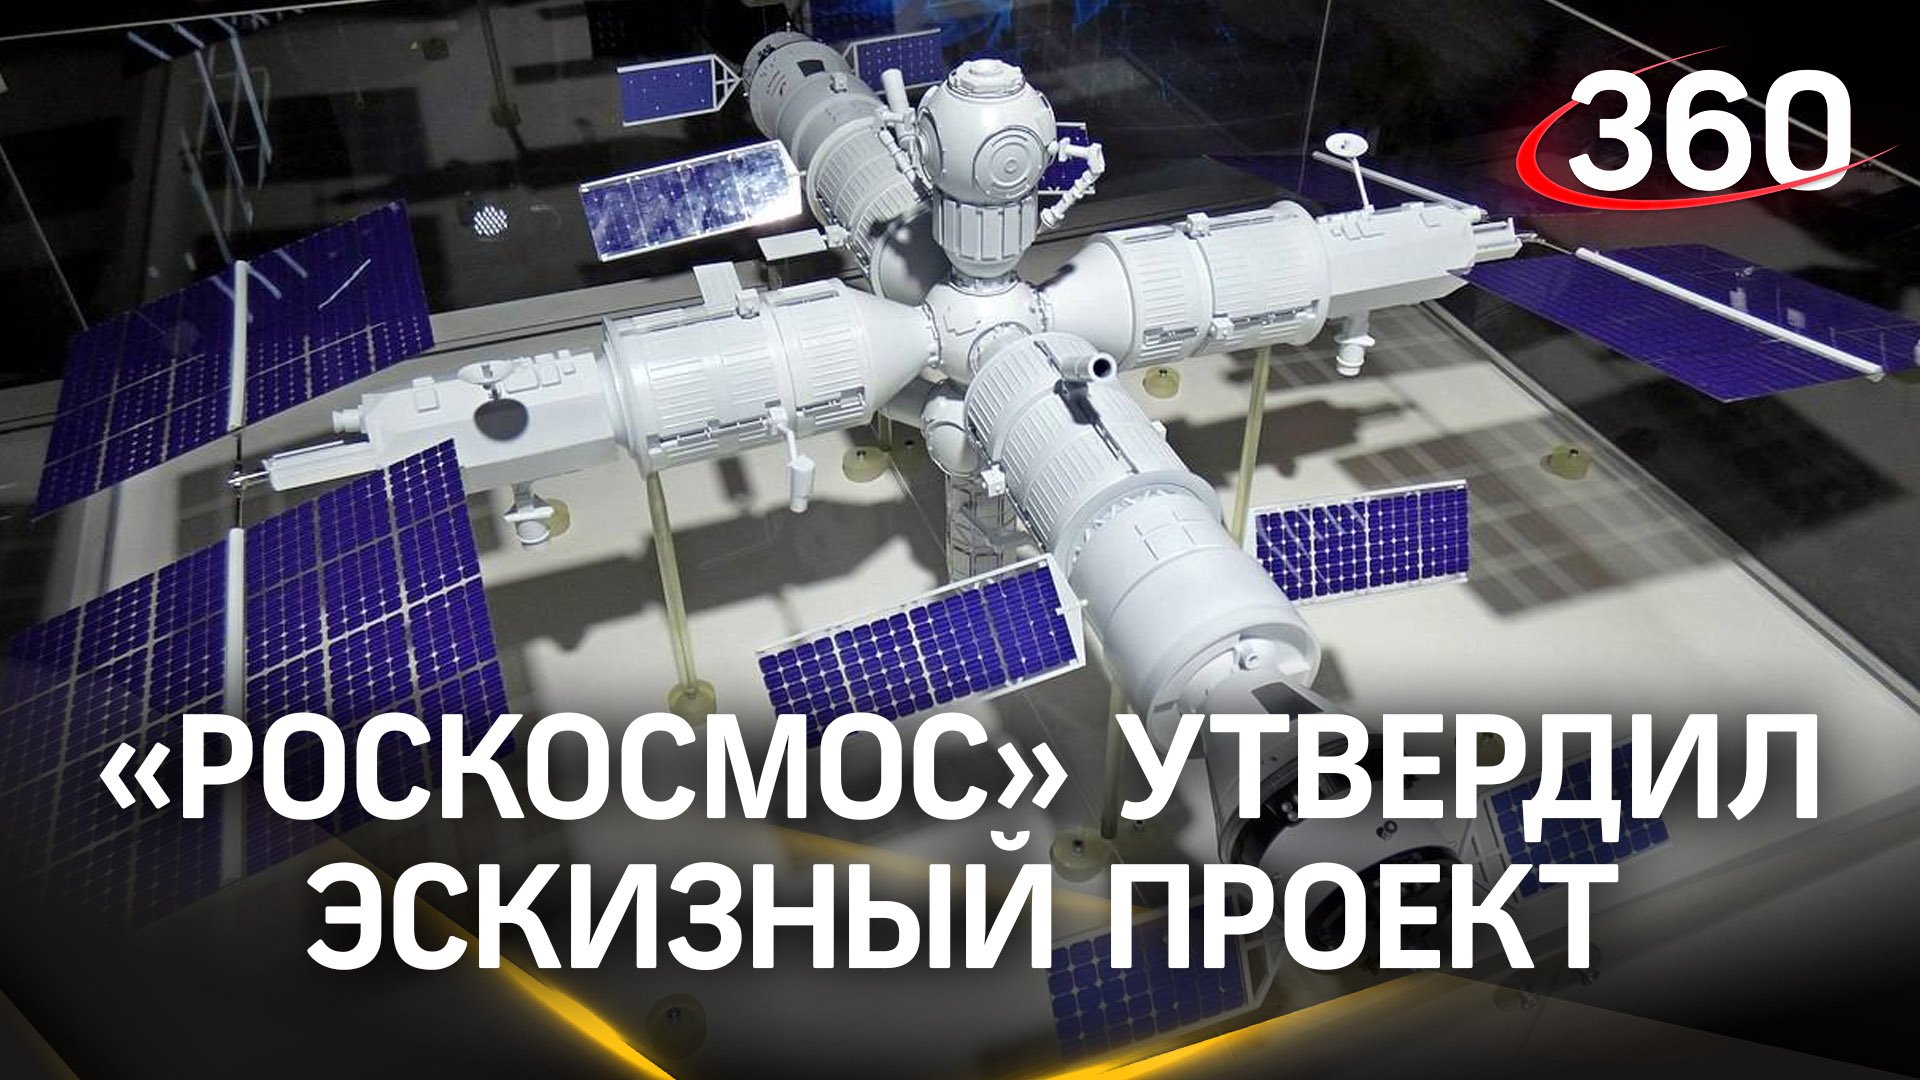 Модульная архитектура. Эскизный проект Российской орбитальной станции утвердили в «Роскосмосе»